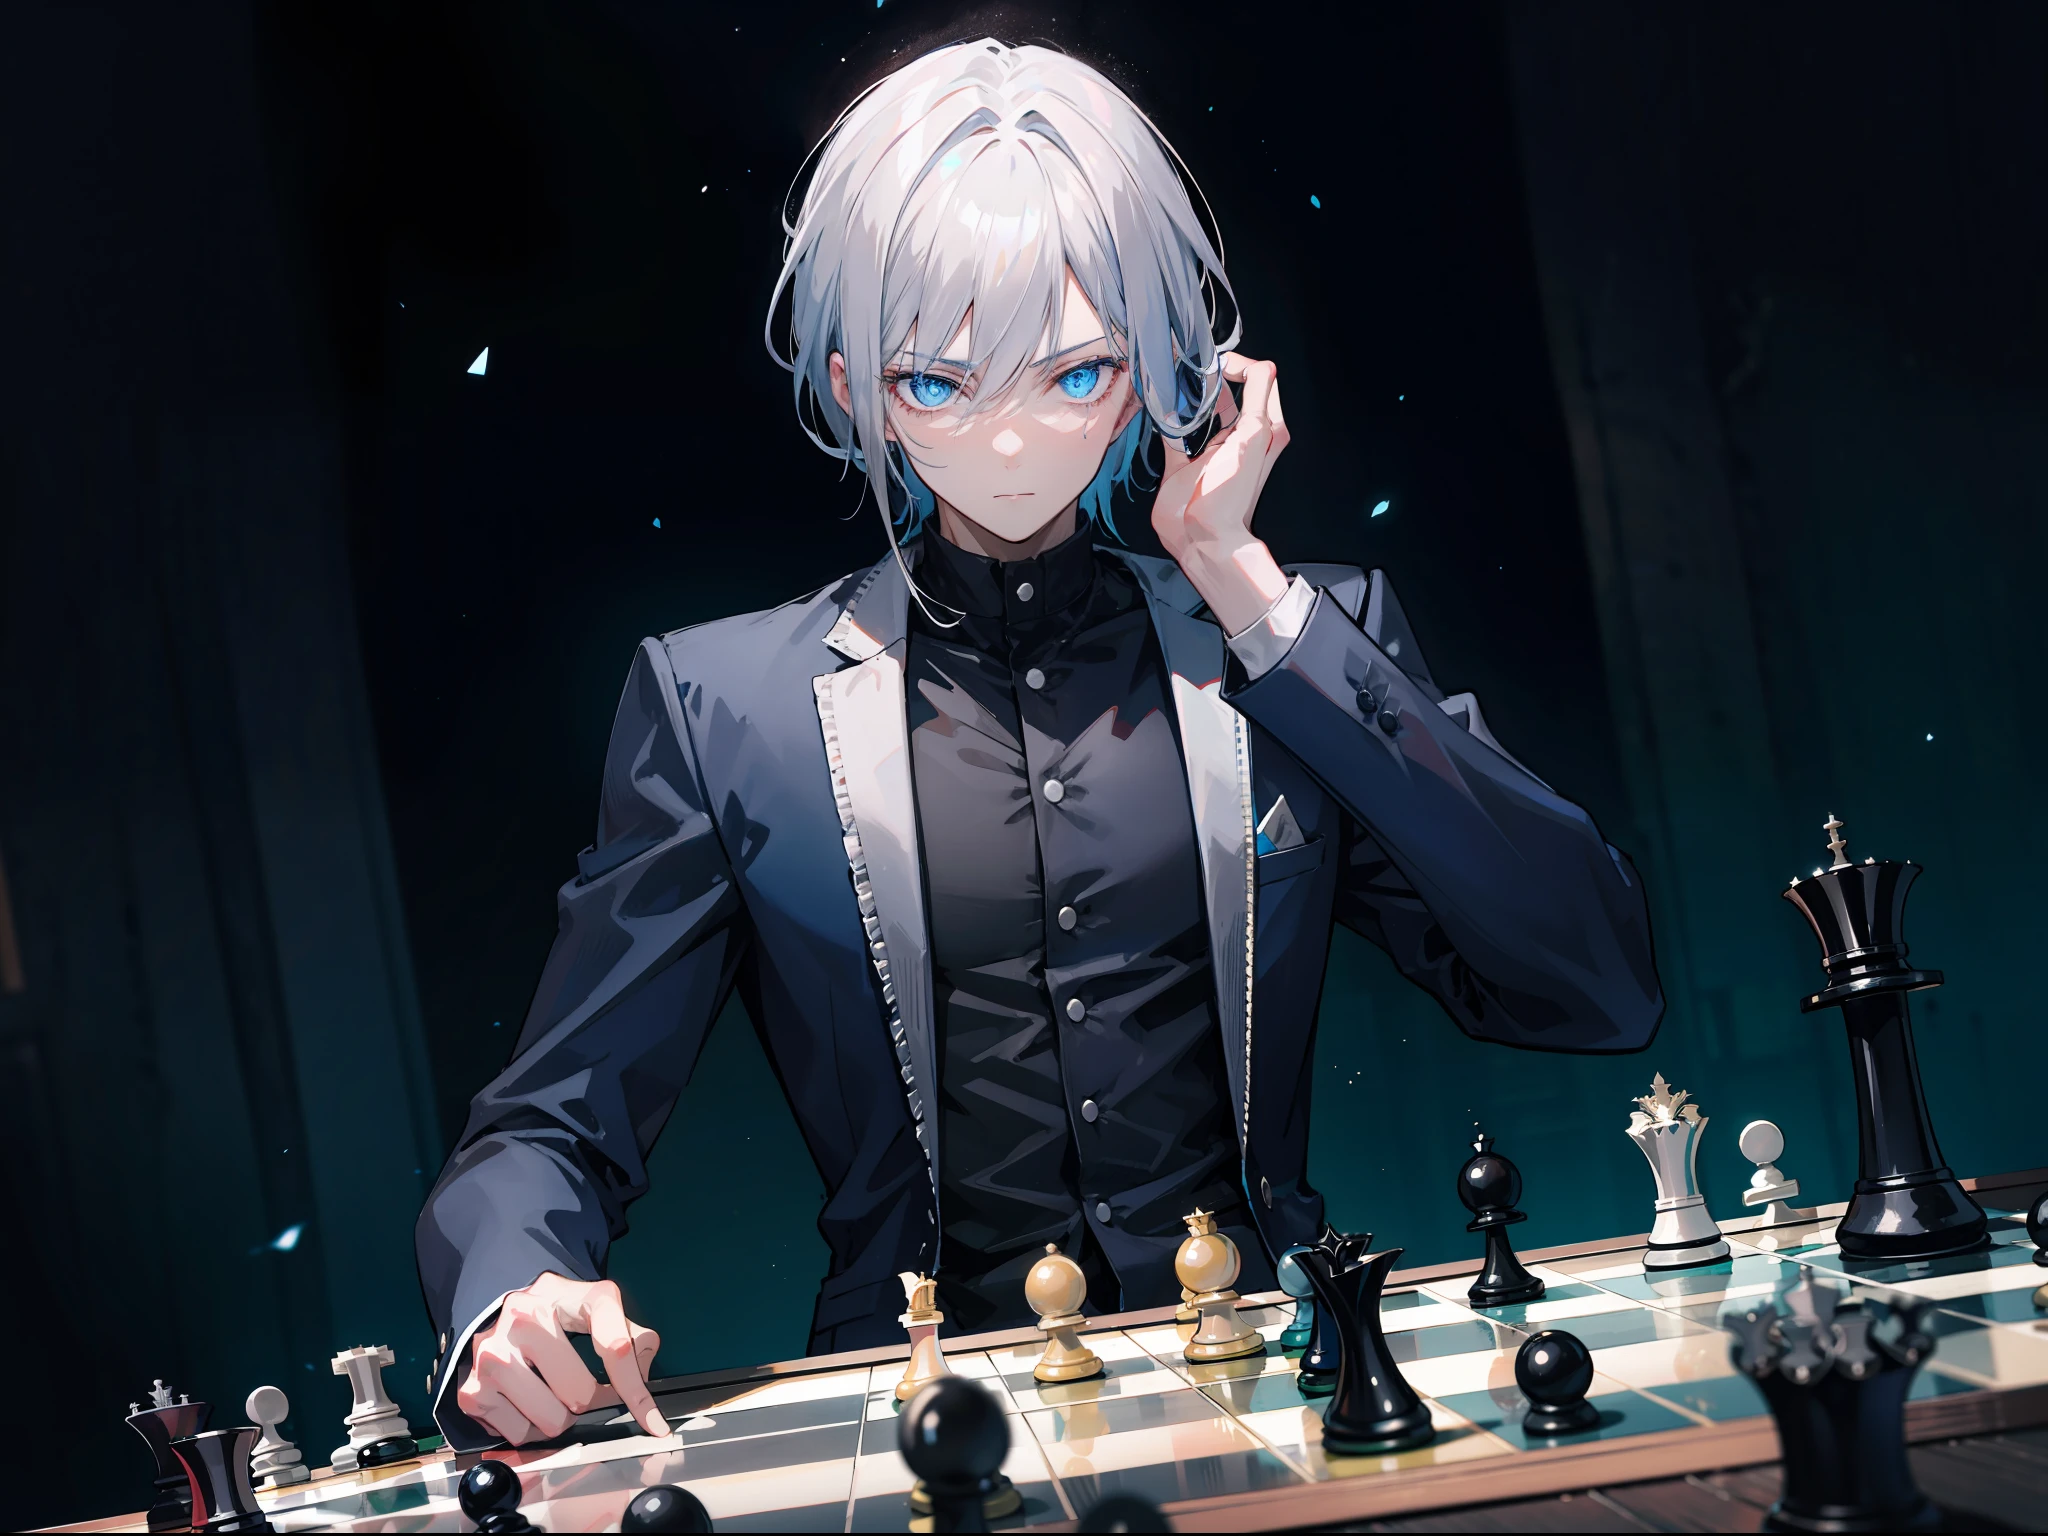 {[{{"Vibe sombria épica, Arte 4k de um homem com cabelos grisalhos e olhos azuis brilhantes sentado em um tabuleiro de xadrez, Contemplando seu próximo passo."}]}}